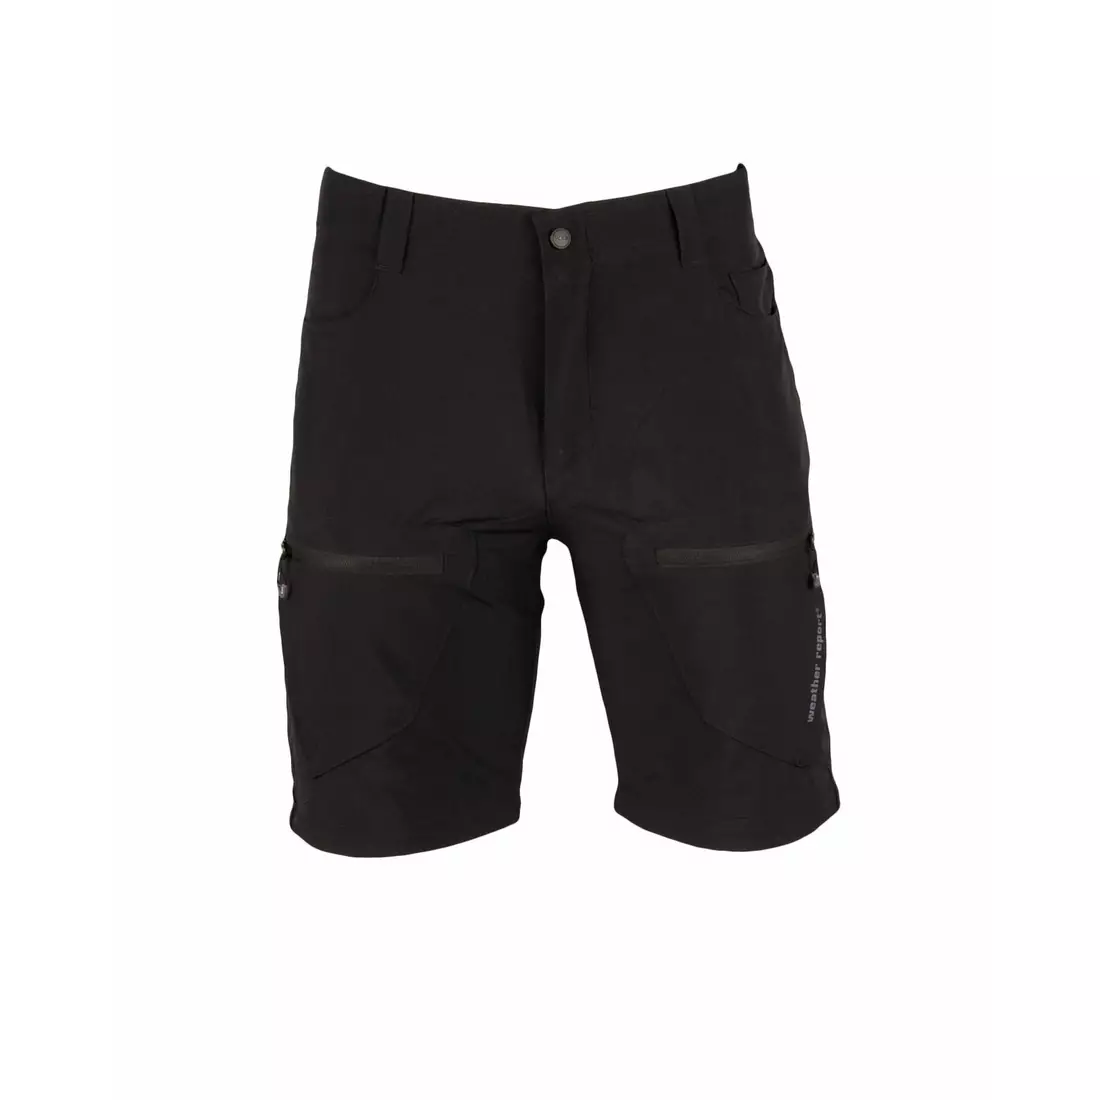 WETTERBERICHT - ROLANDO - Herren-Sporthose mit abnehmbaren Beinen, schwarz